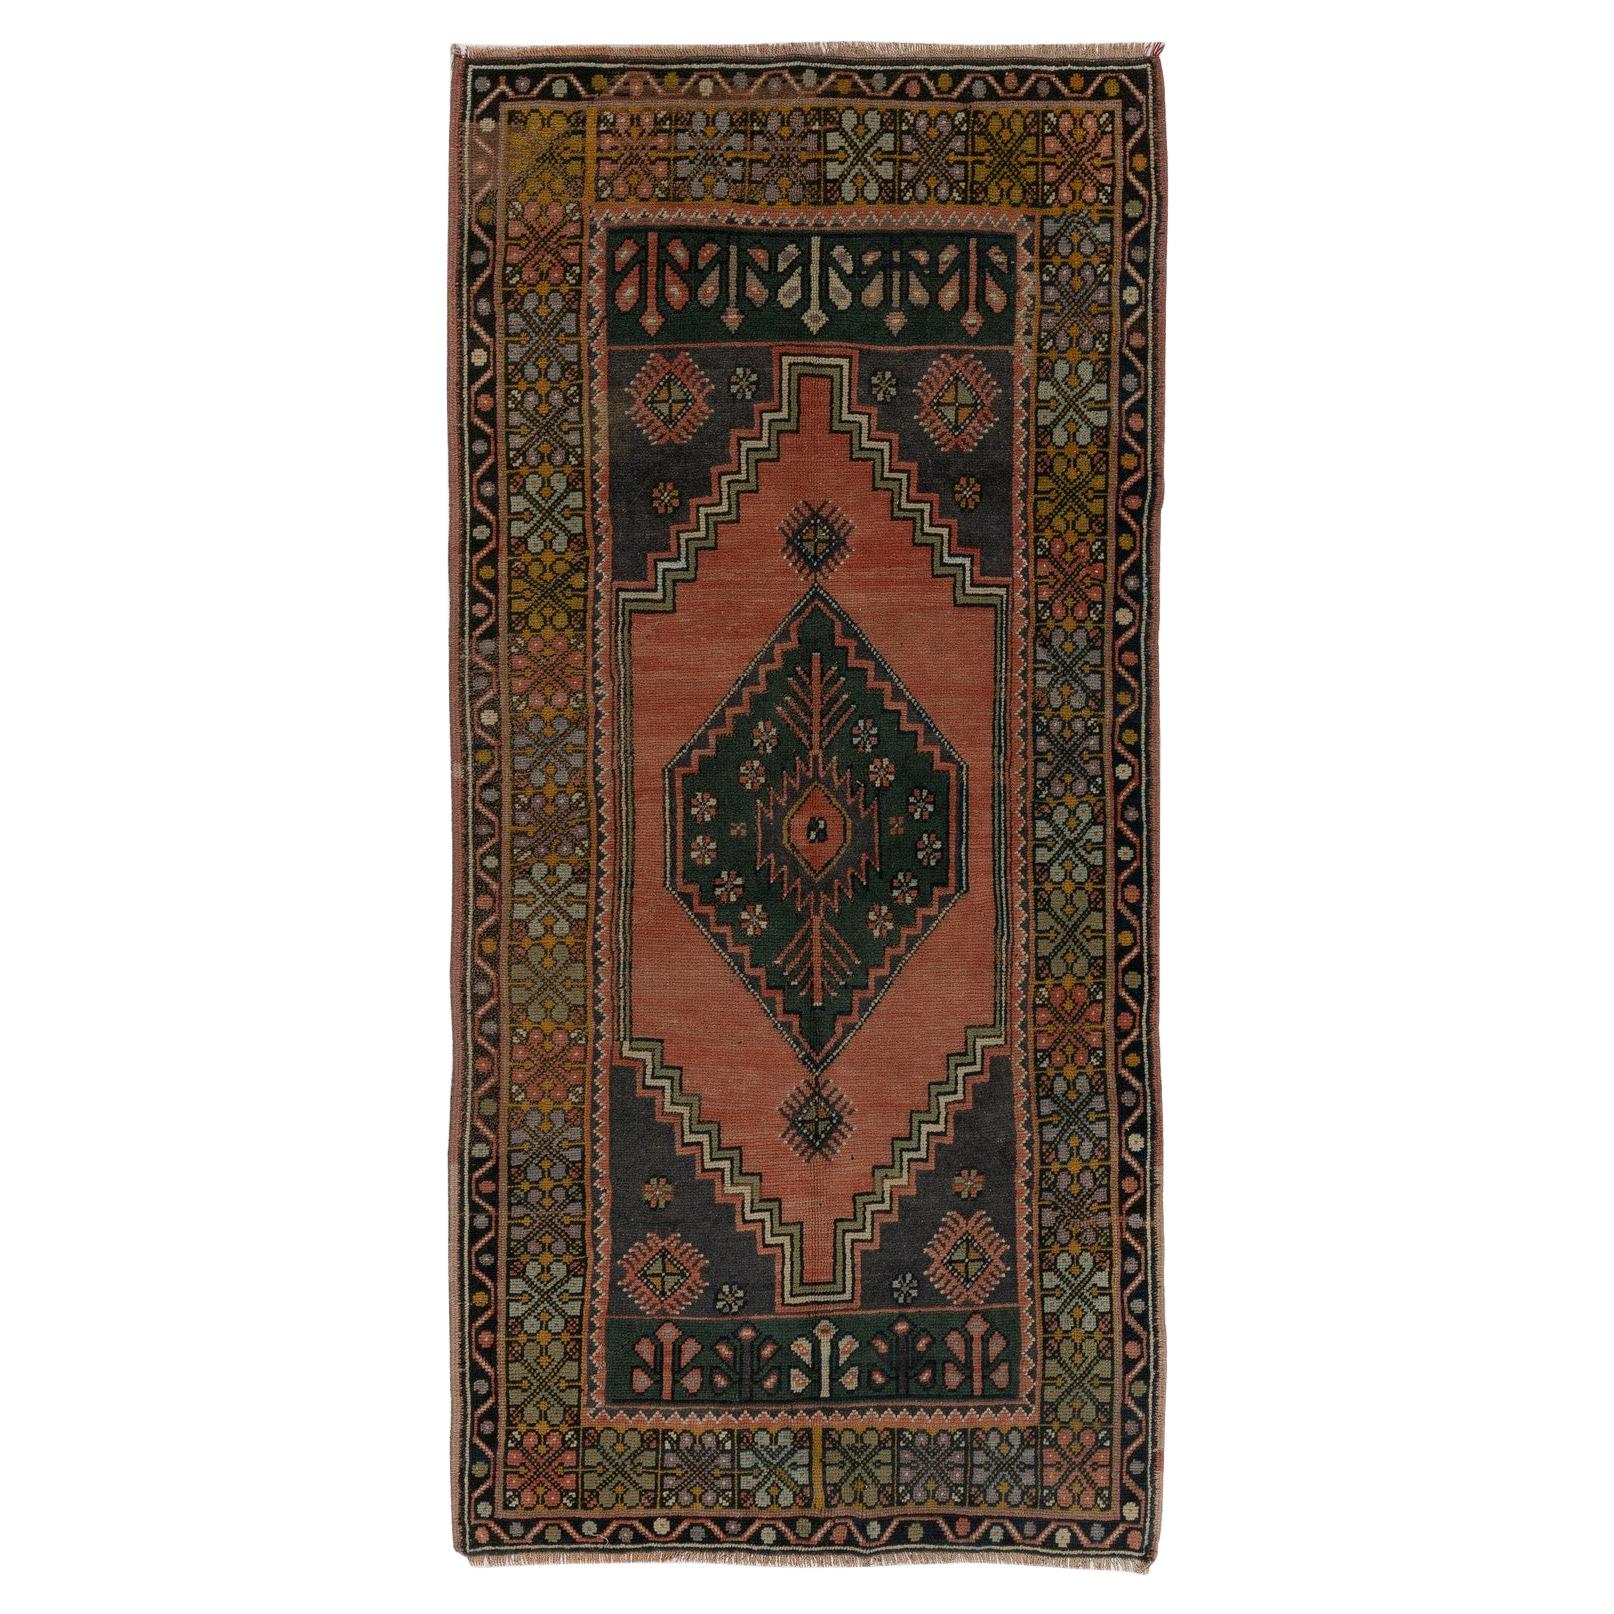 Tapis traditionnel turc tribal vintage fait à la main 3,5x7 pieds, revêtement de sol en laine